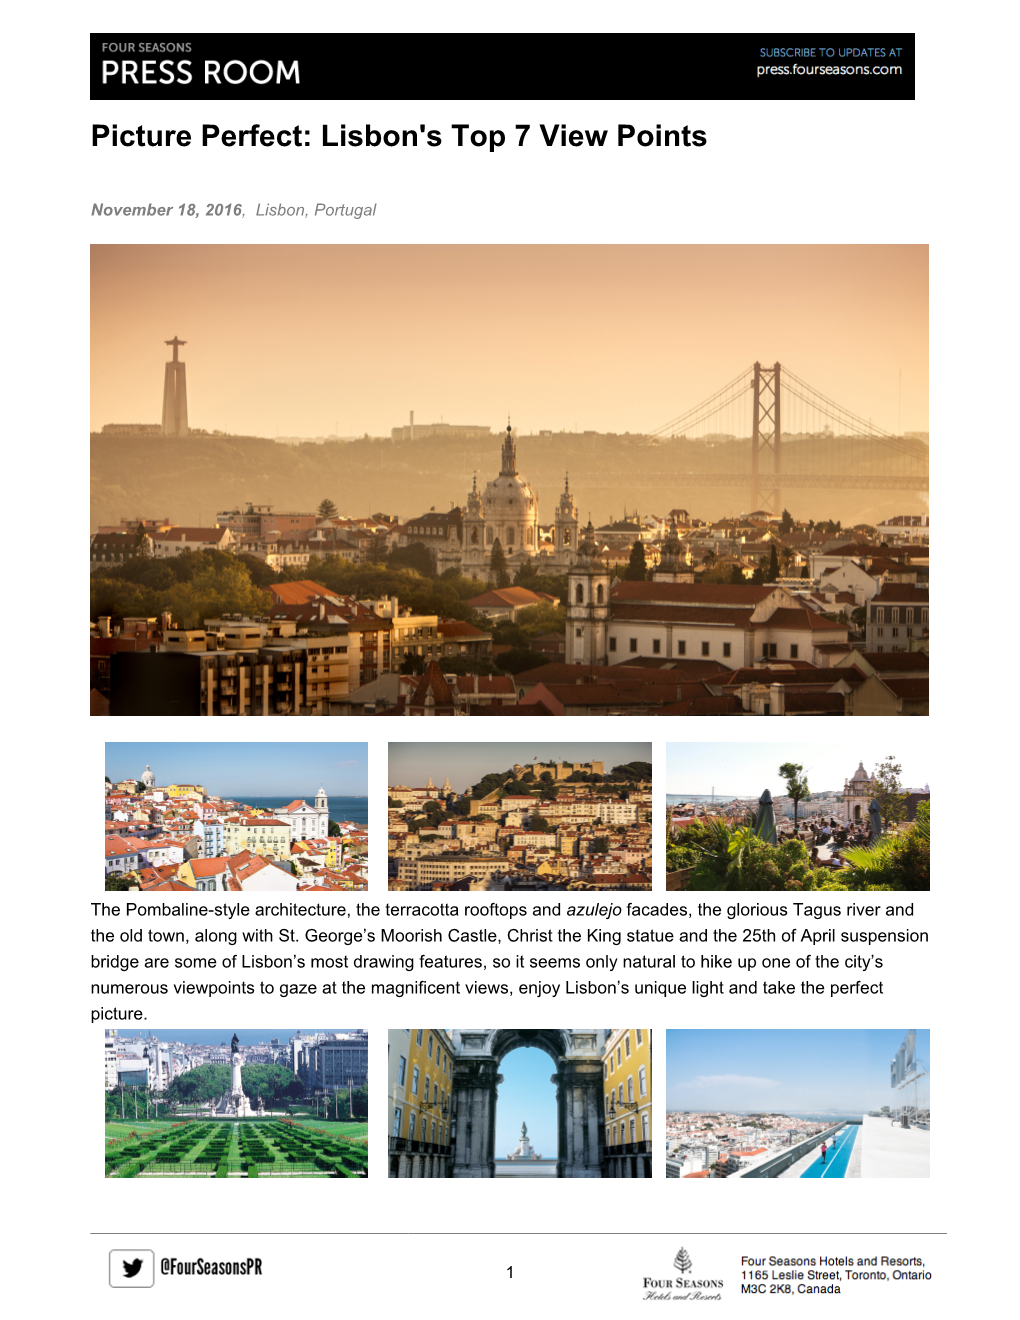 Lisbon's Top 7 View Points